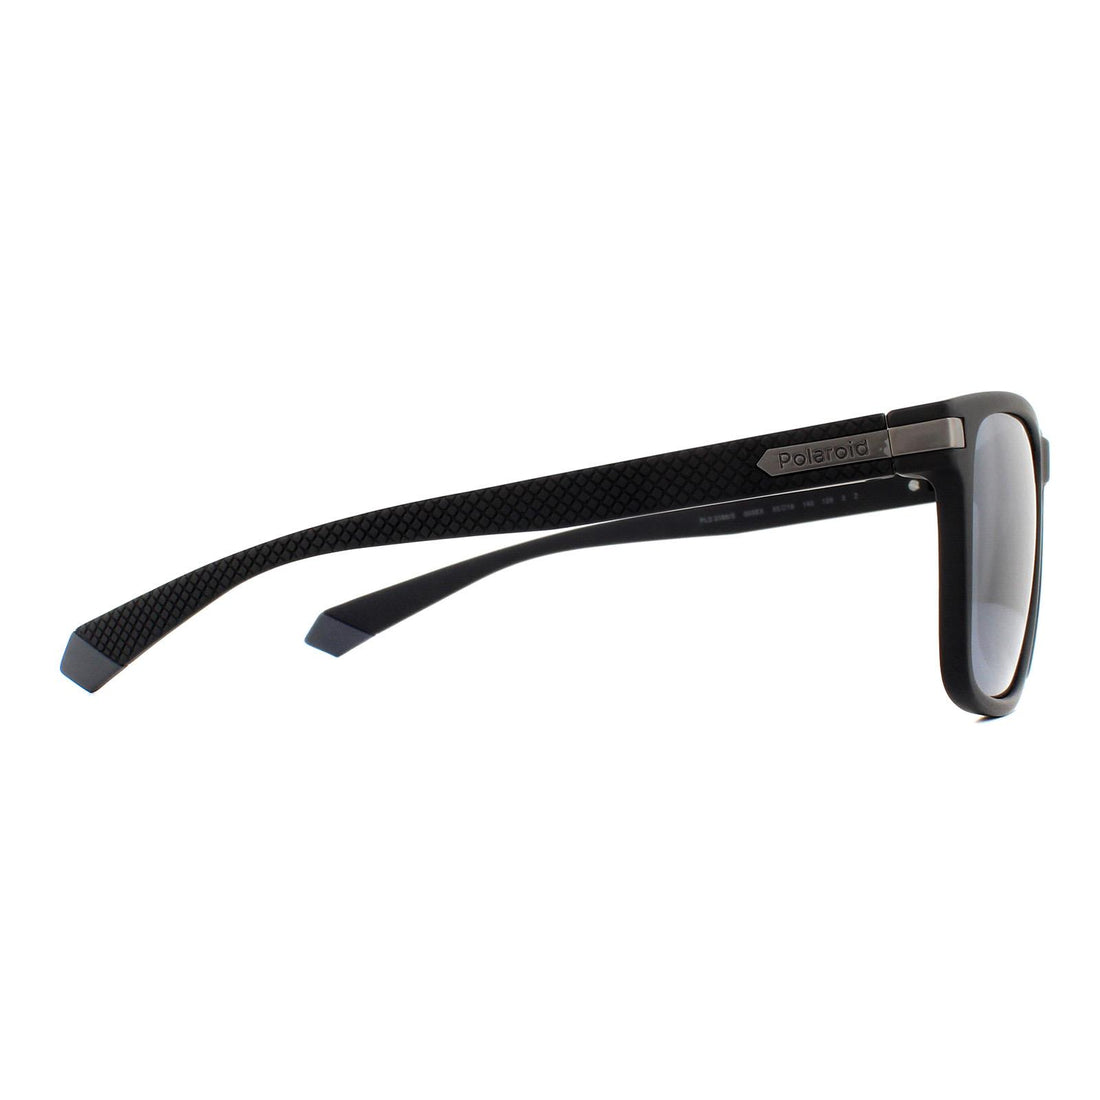 Polaroid Sunglasses PLD 2088/S 003 EX Matte Black Silver Mirror Polarized